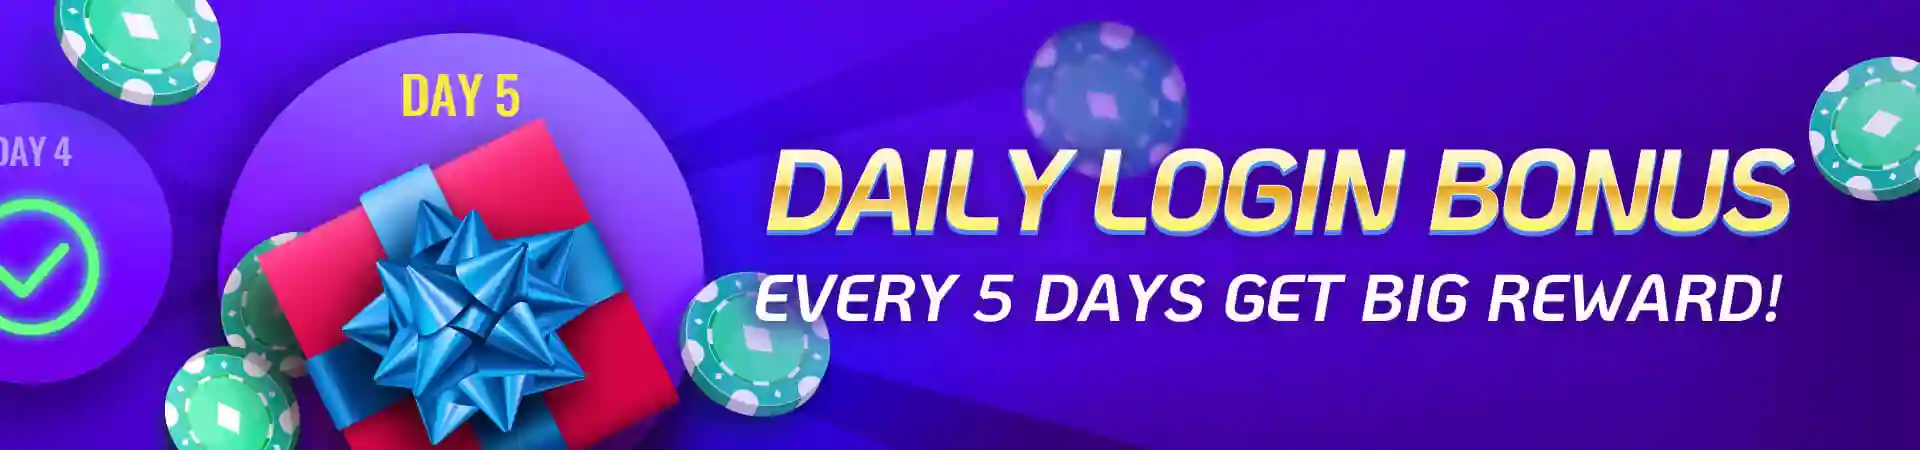 Daily Login Bonus